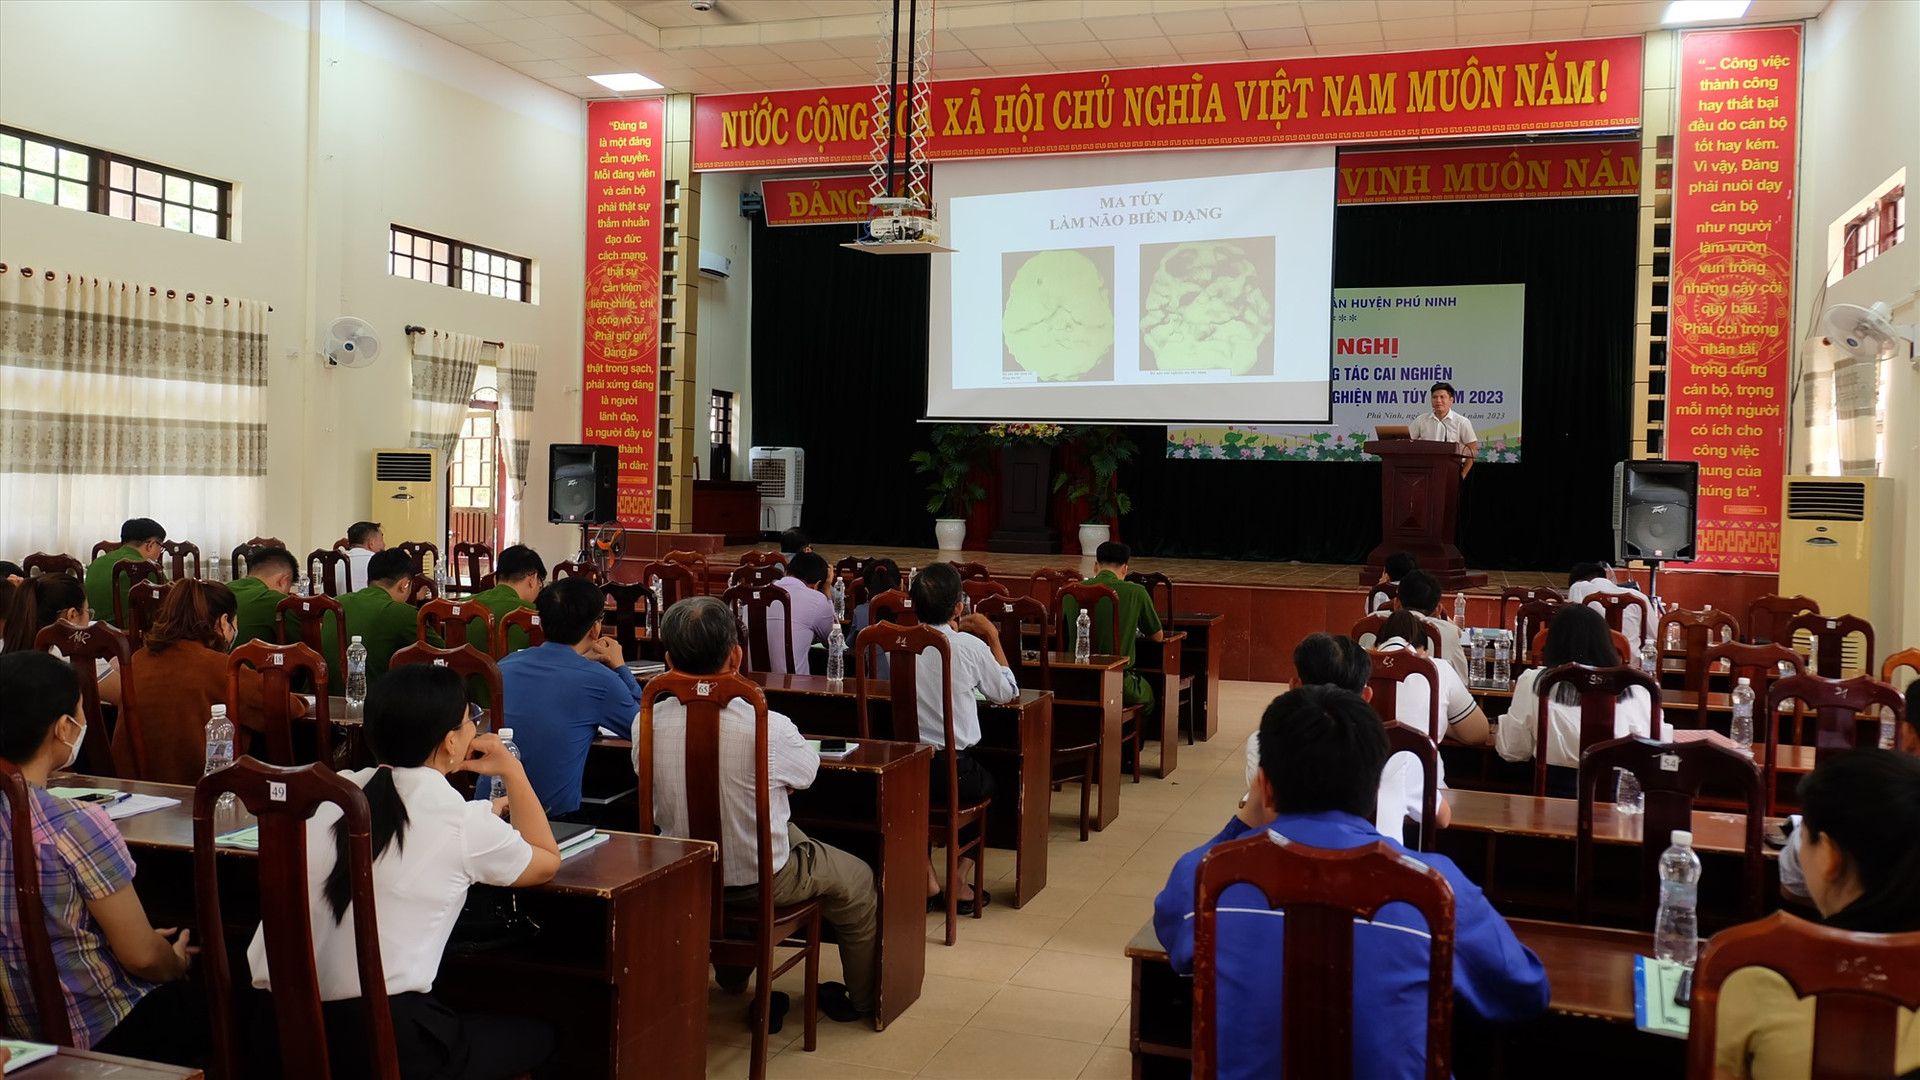 Hơn 100 cán bộ làm công tác cai nghiện và quản lý sau cai nghiện ma túy trên địa bàn huyện Phú Ninh tham gia lớp tập huấn. Ảnh: M.L